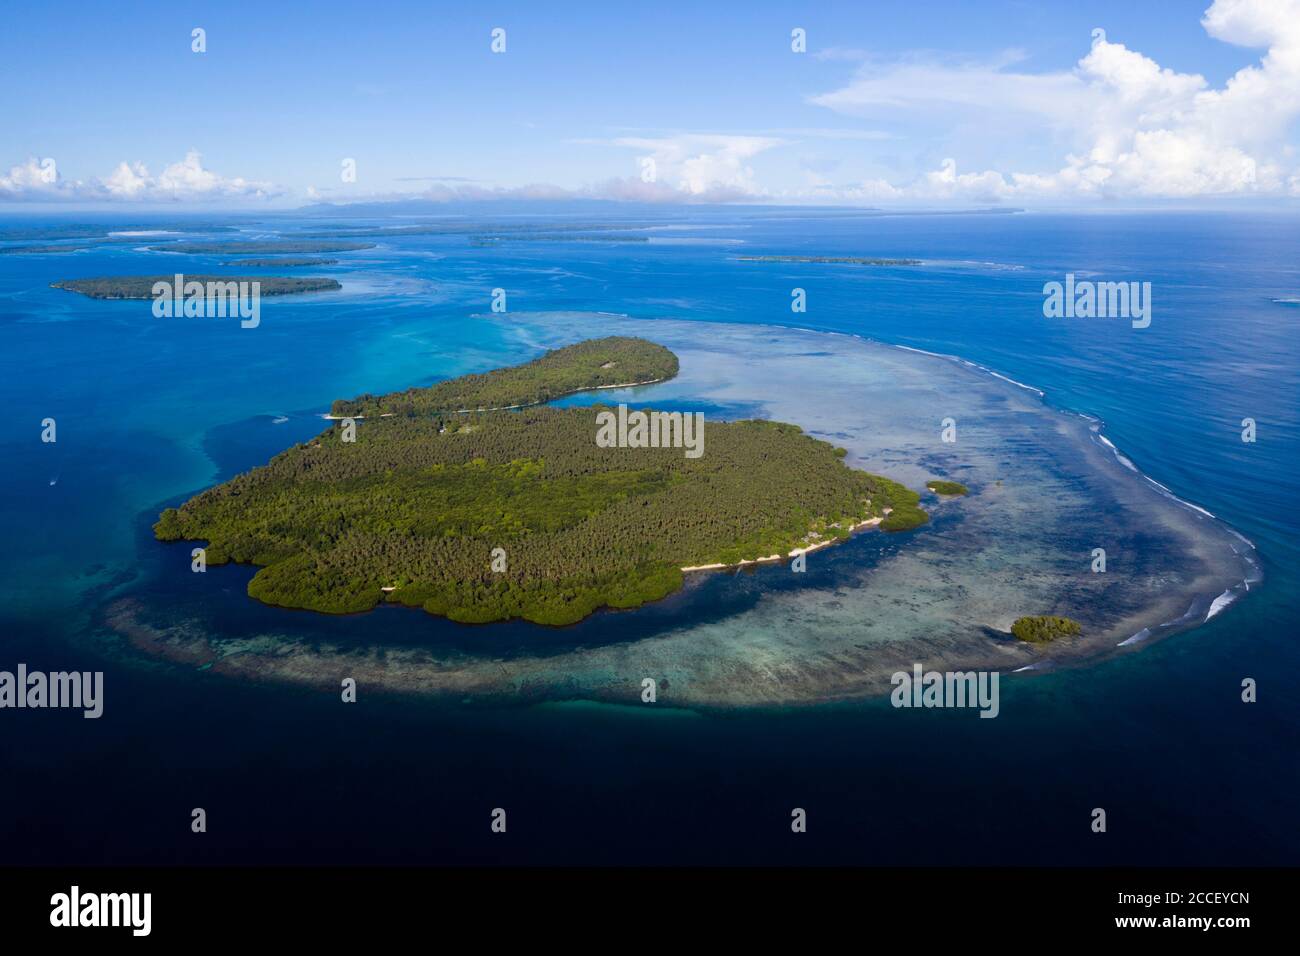 Vista aérea de las islas de la bahía de Balgai, Nueva Irlanda, Papua Nueva Guinea Foto de stock